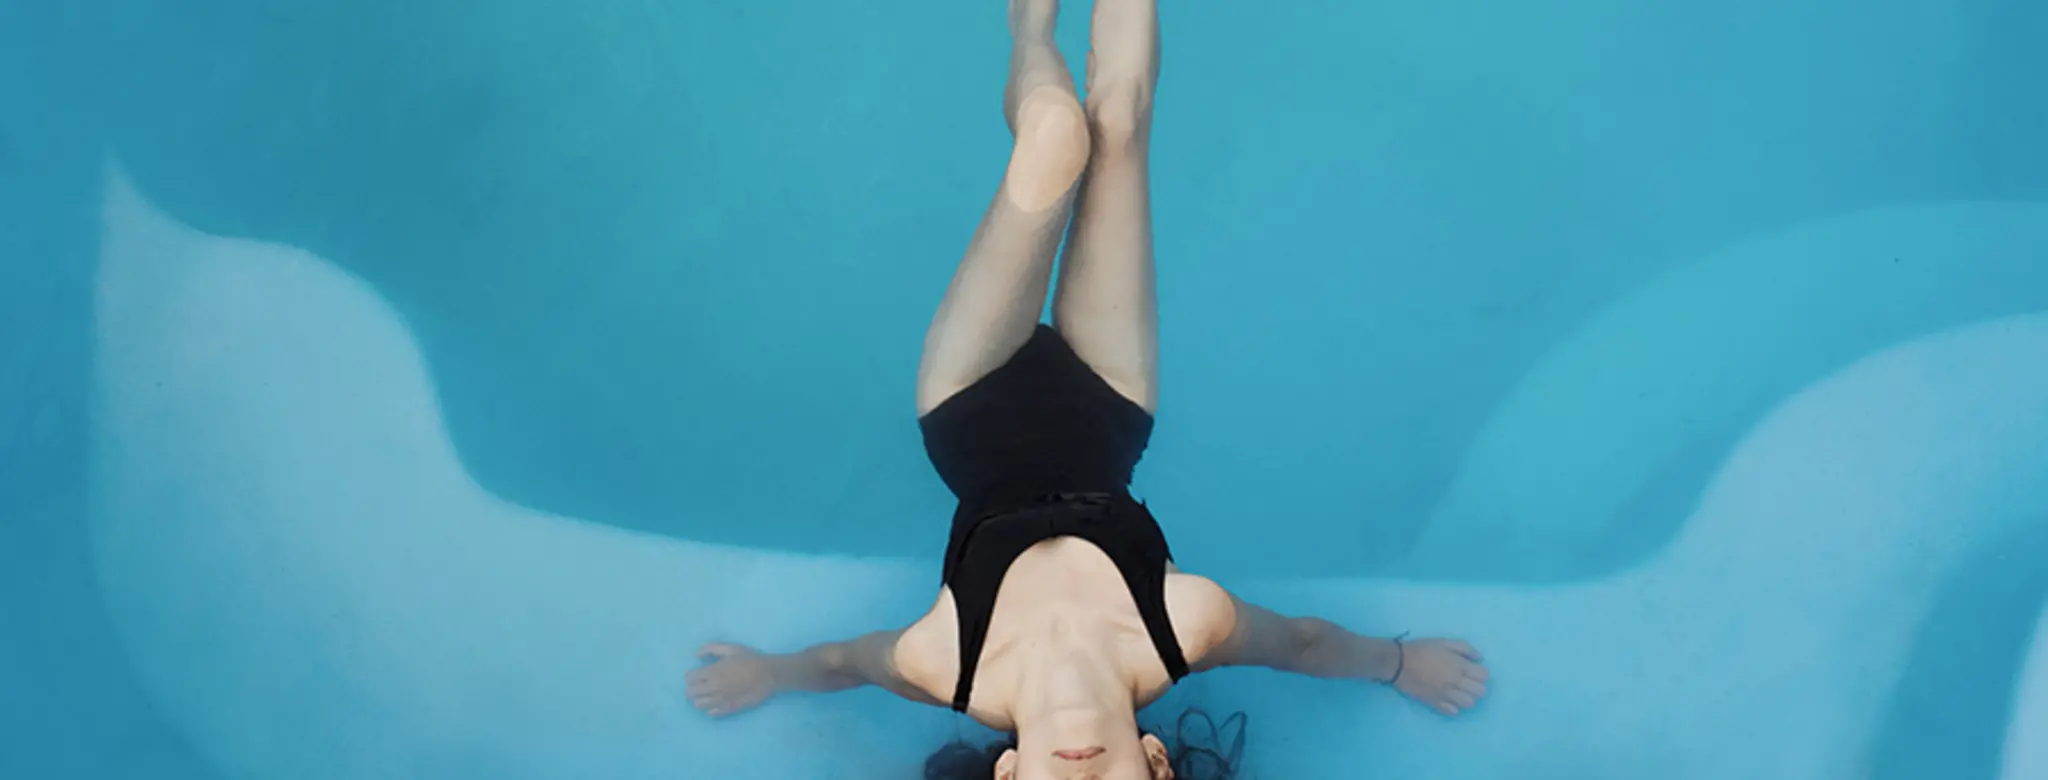 woman in black bathing suit in pool float spa